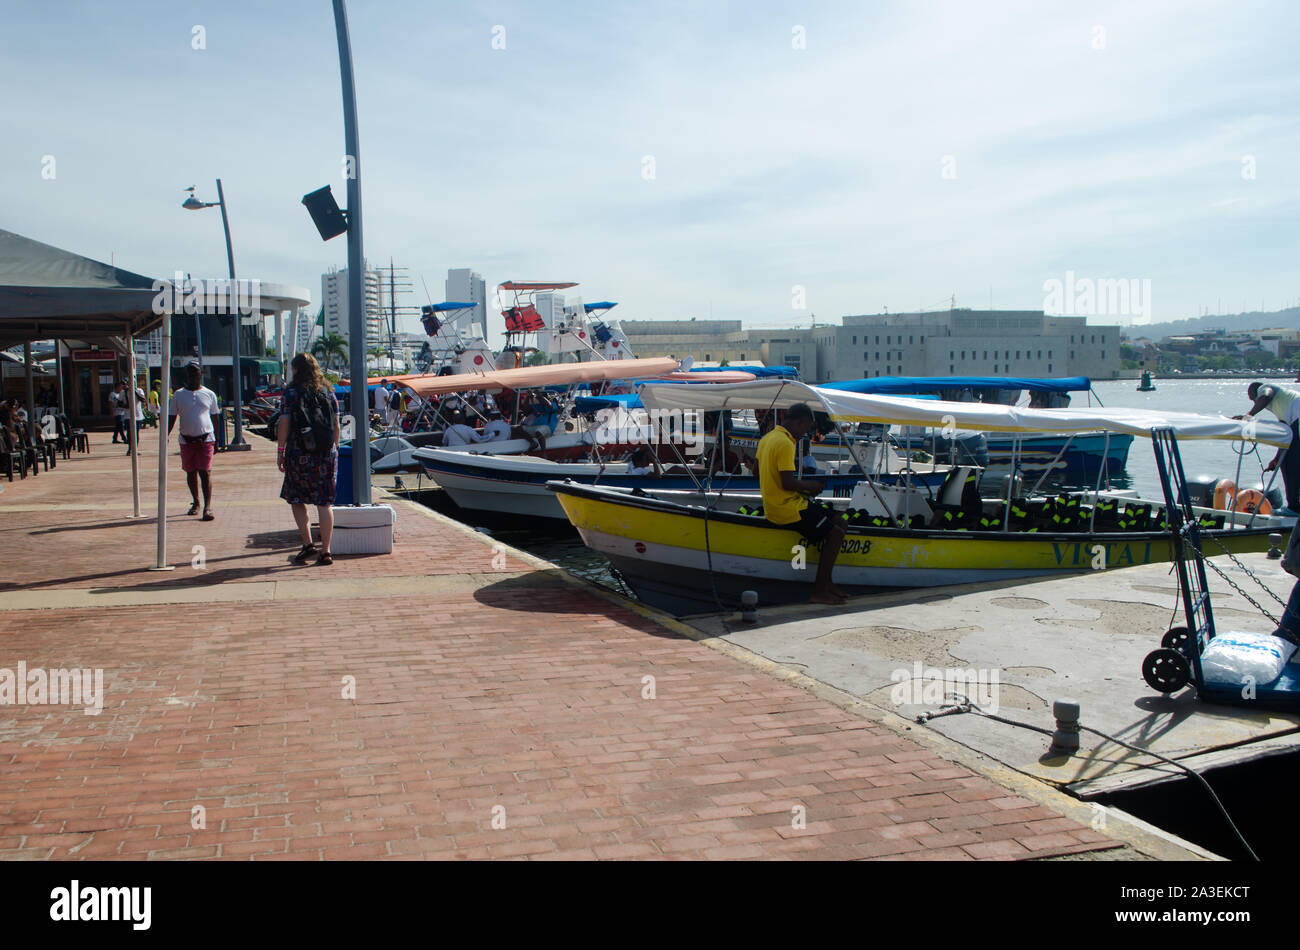 Sur le quai touristique Bahia de las Ánimas à Carthagène, le site de départ pour les bateaux de touristes à Playa Blanca et l'Islas del Rosario Banque D'Images